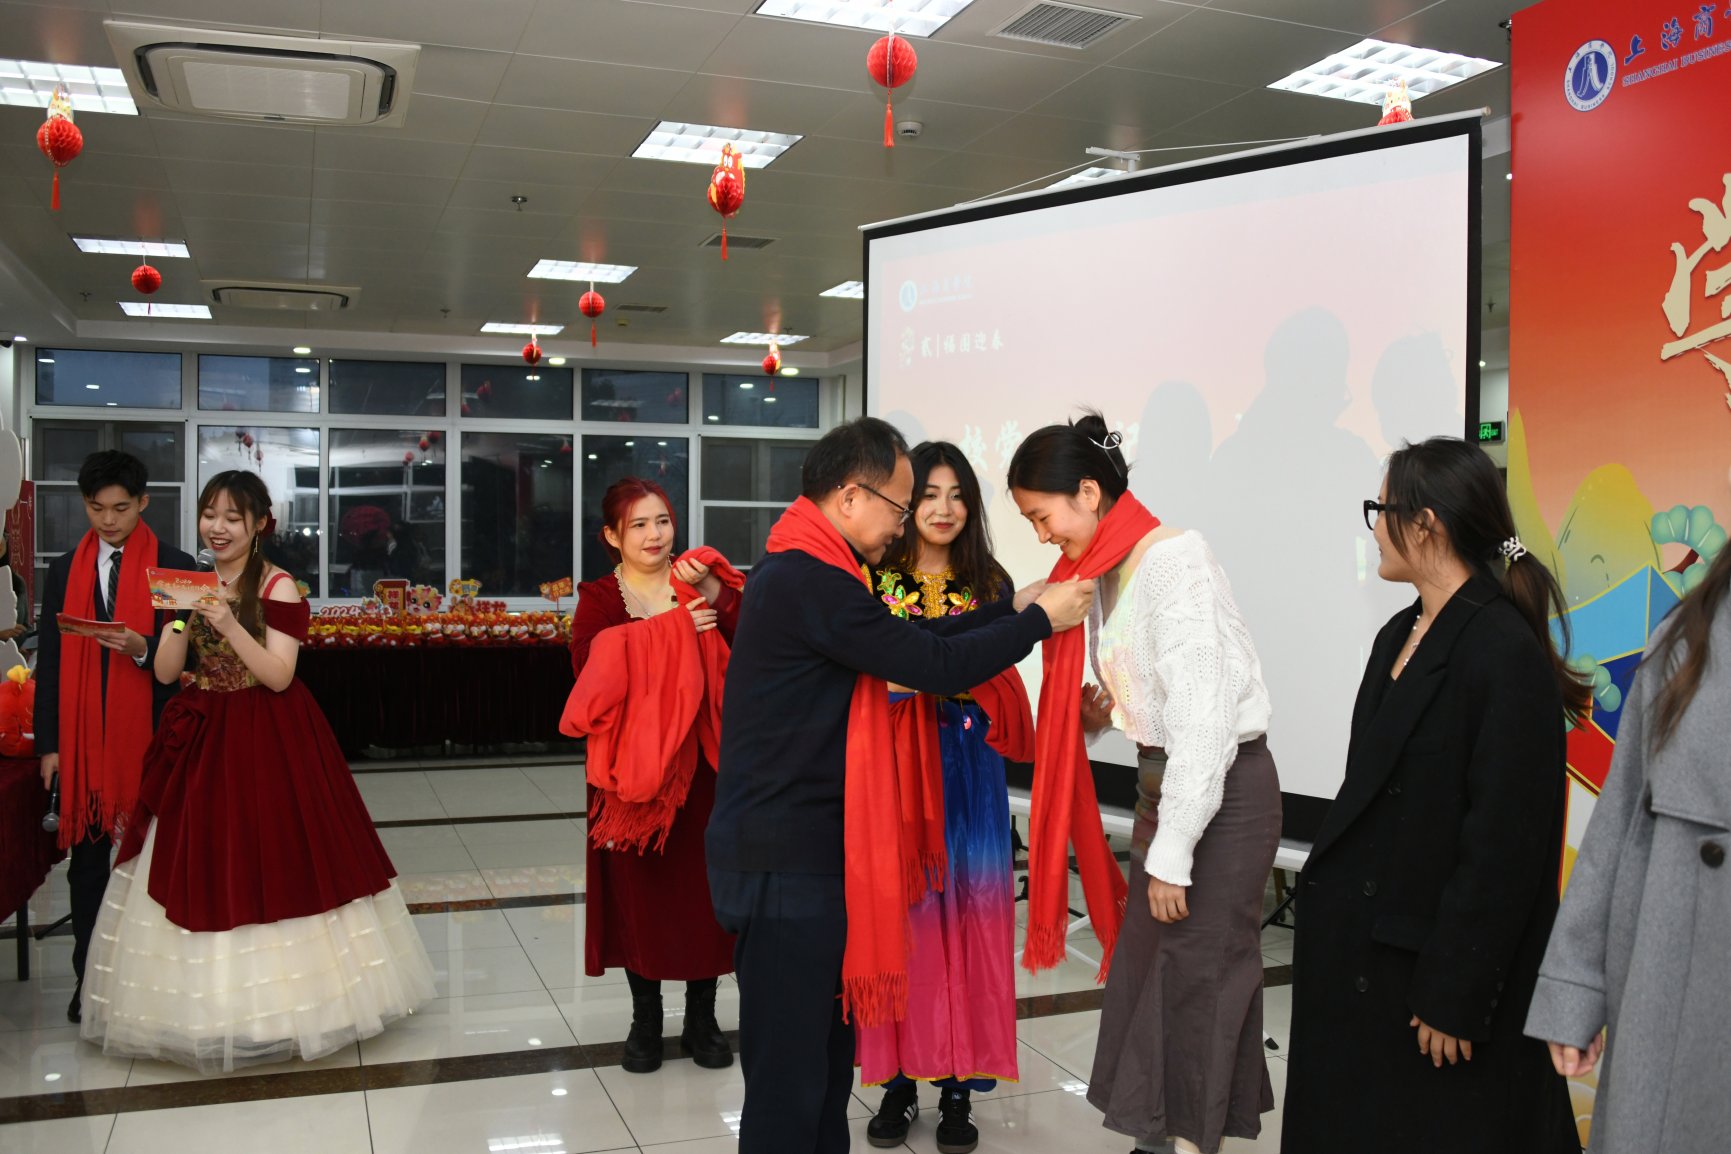 校党委书记沈大明为学生代表佩戴了代表着殷切期盼与美好祝福的红围巾